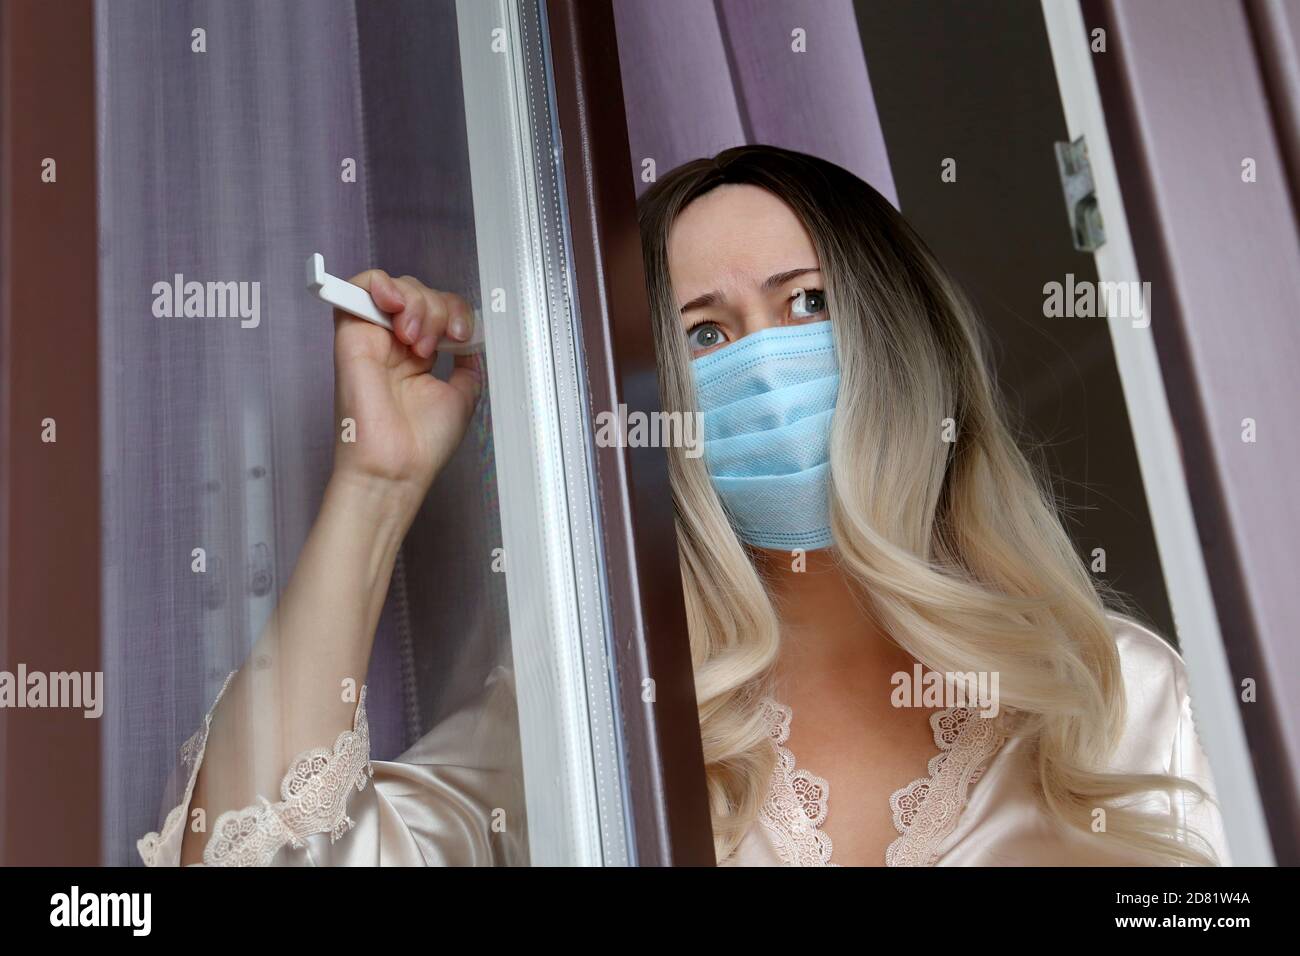 Coronavirus-Quarantäne während der covid-19-Epidemie. Besorgt Frau im Gesicht medizinische Maske schaut aus dem Fenster Stockfoto